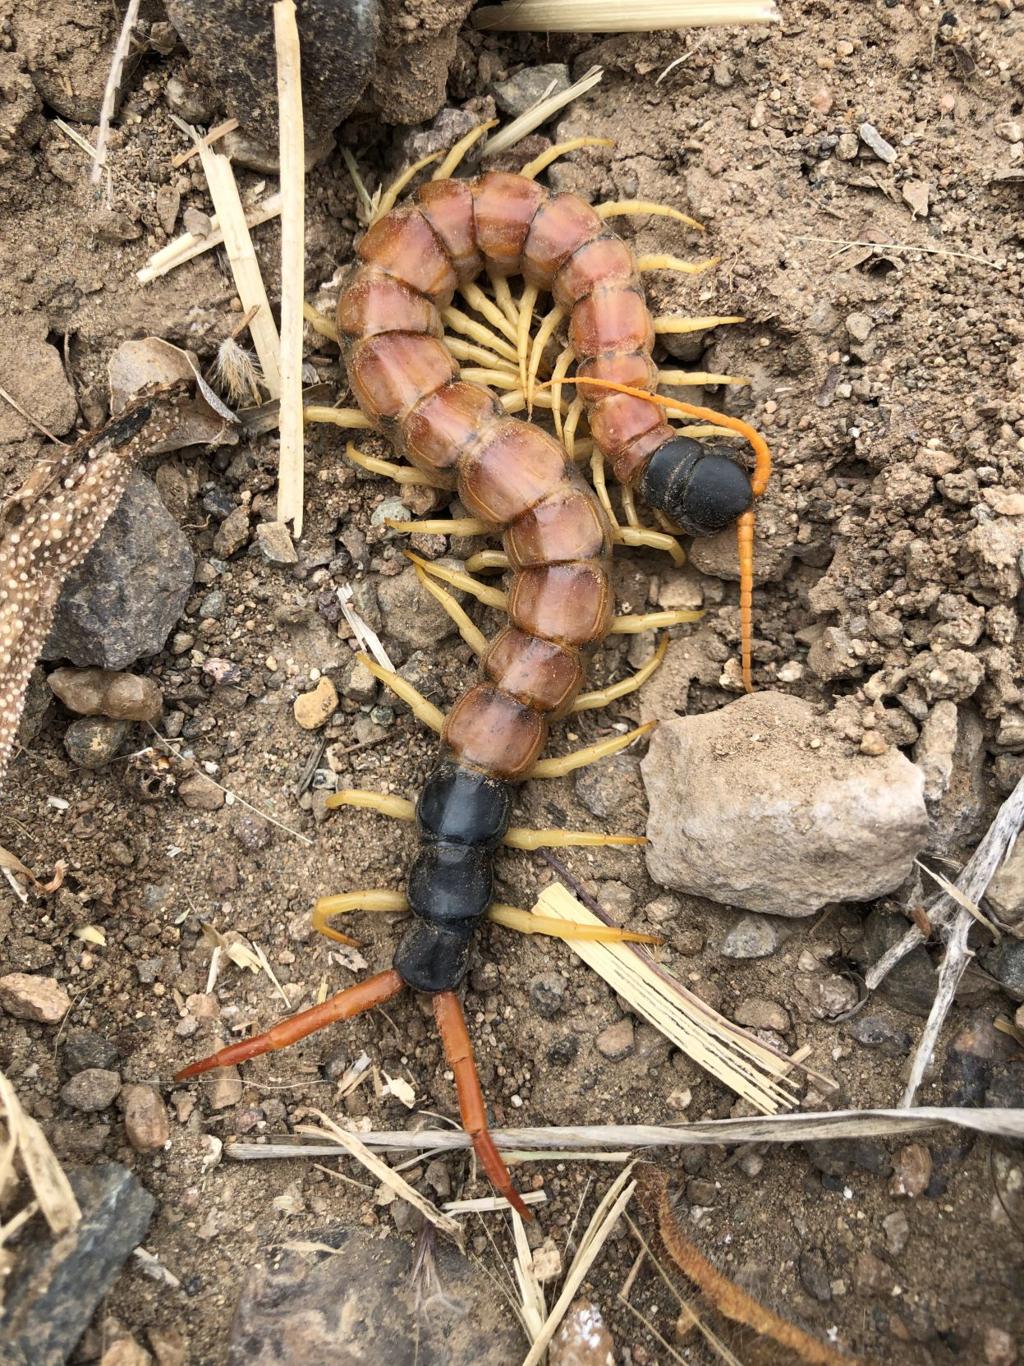 giant desert centipede